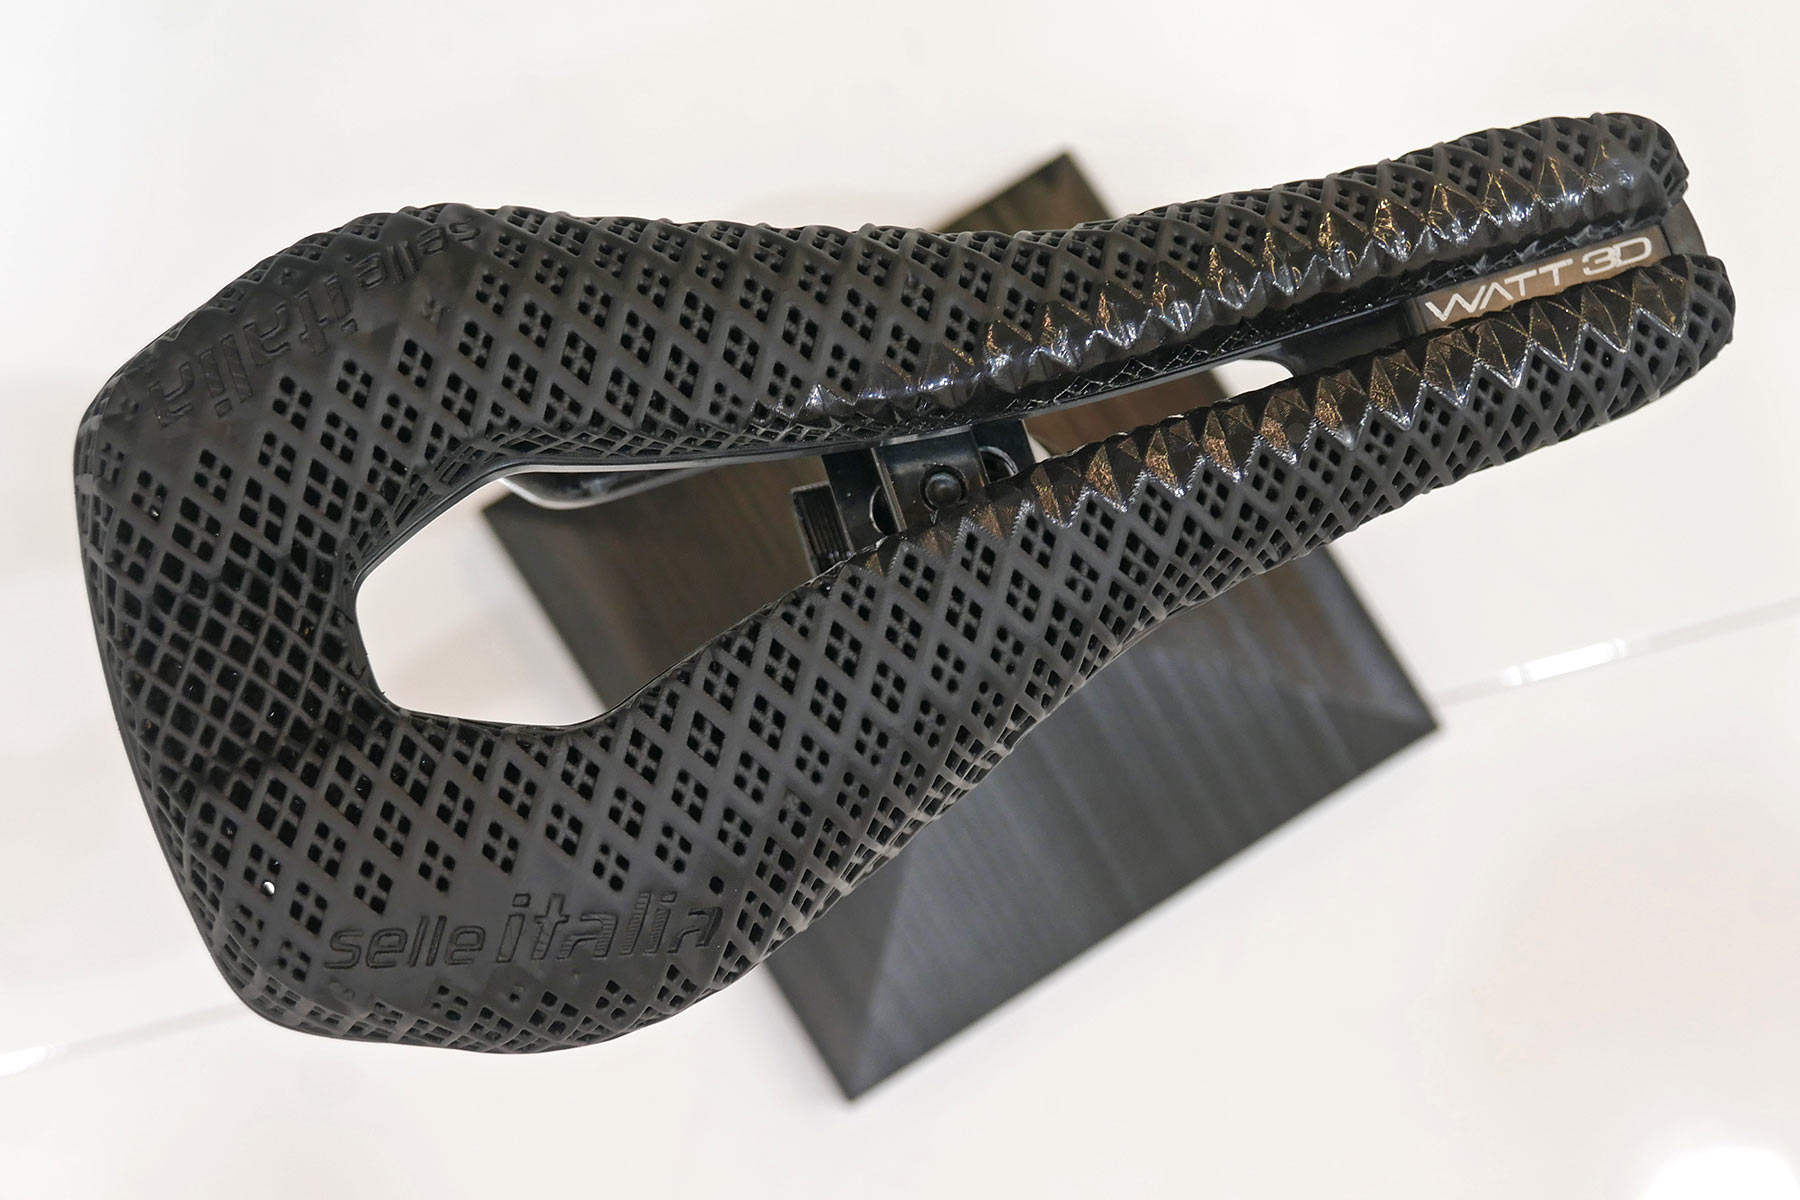 Selle Italia Watt 3D-printed triathlon & TT saddle, top